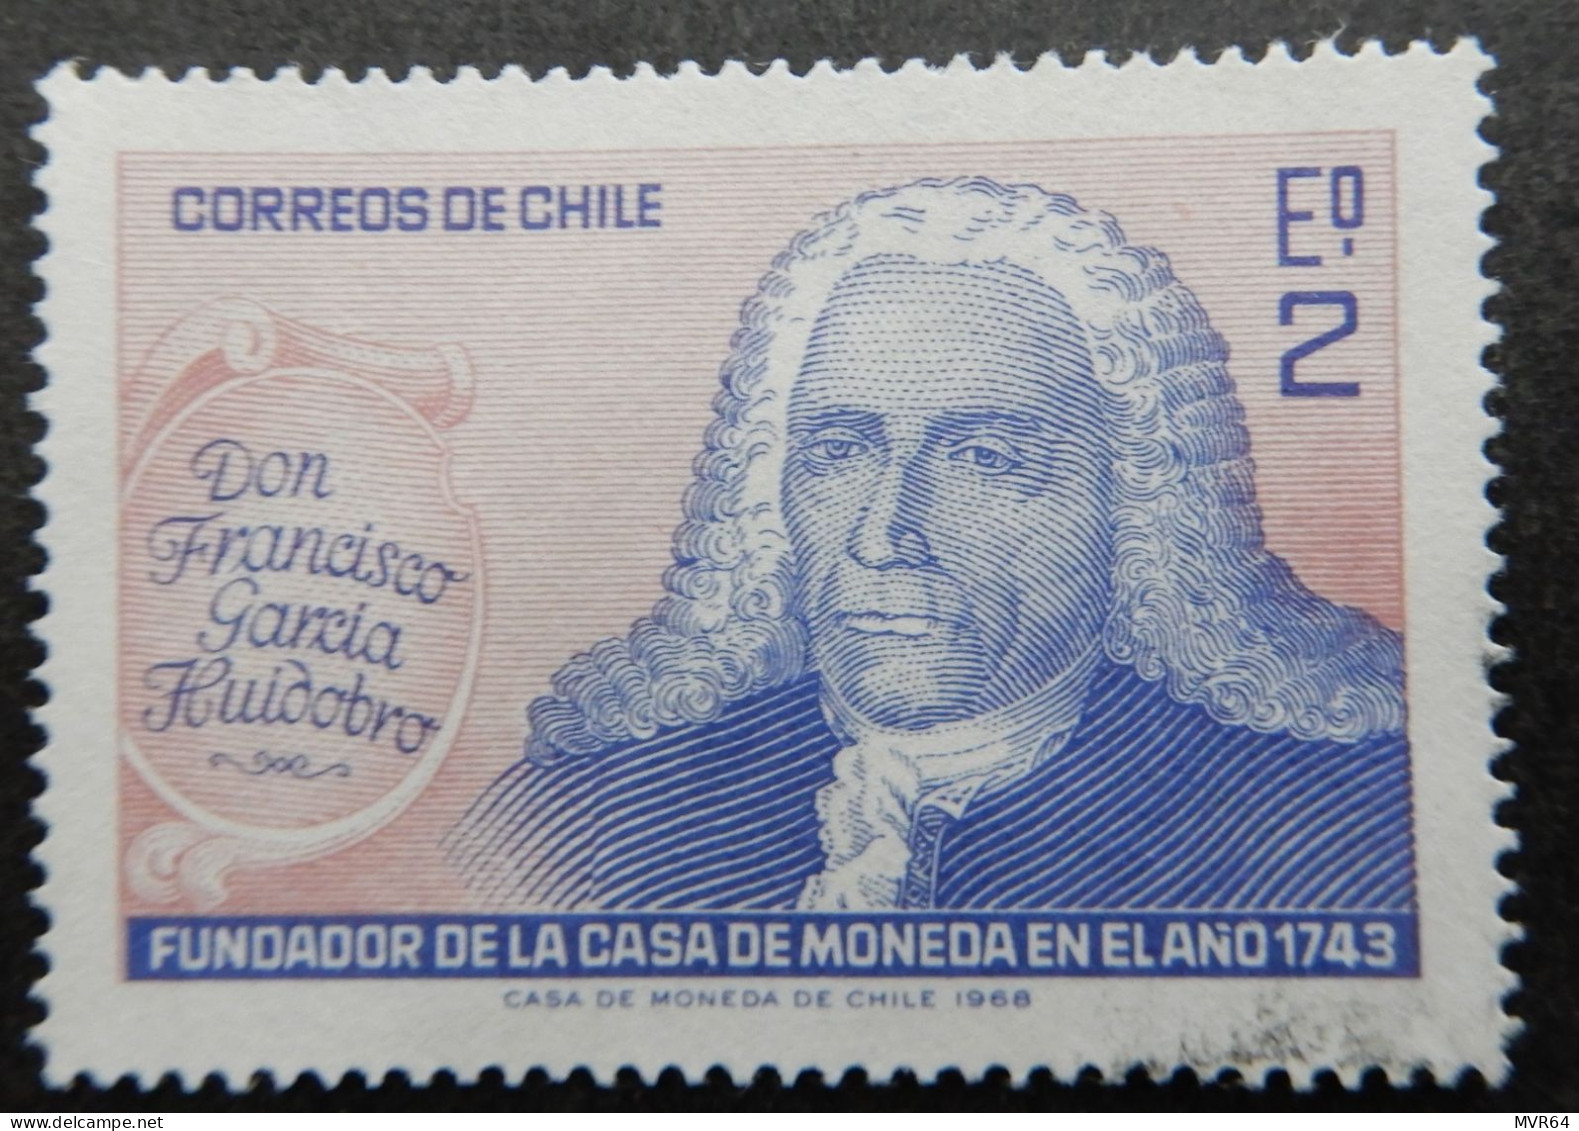 Chili Chile 1968 (1) Don Francisco Garcia Huidobra Anniv. Casa De Moneda. - Chile